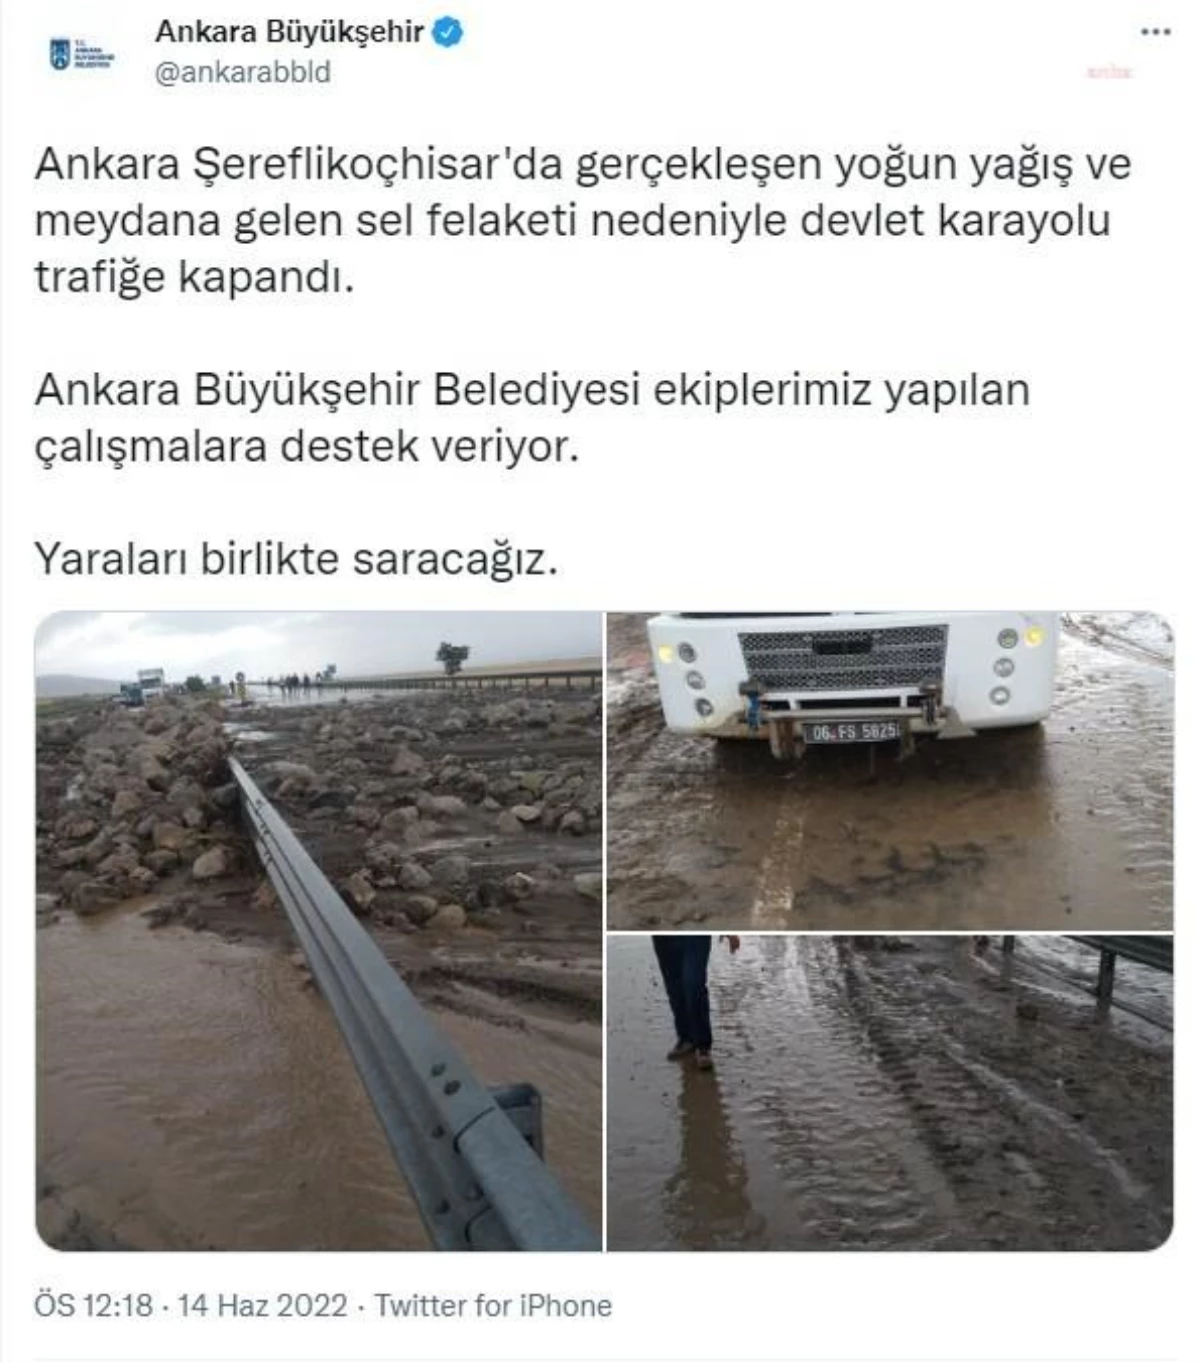 Ankara Büyükşehir Belediyesi, Şeferlikoçhisar\'da Kapanan Karayolunun Açılması İçin Destek Verdiğini Duyurdu